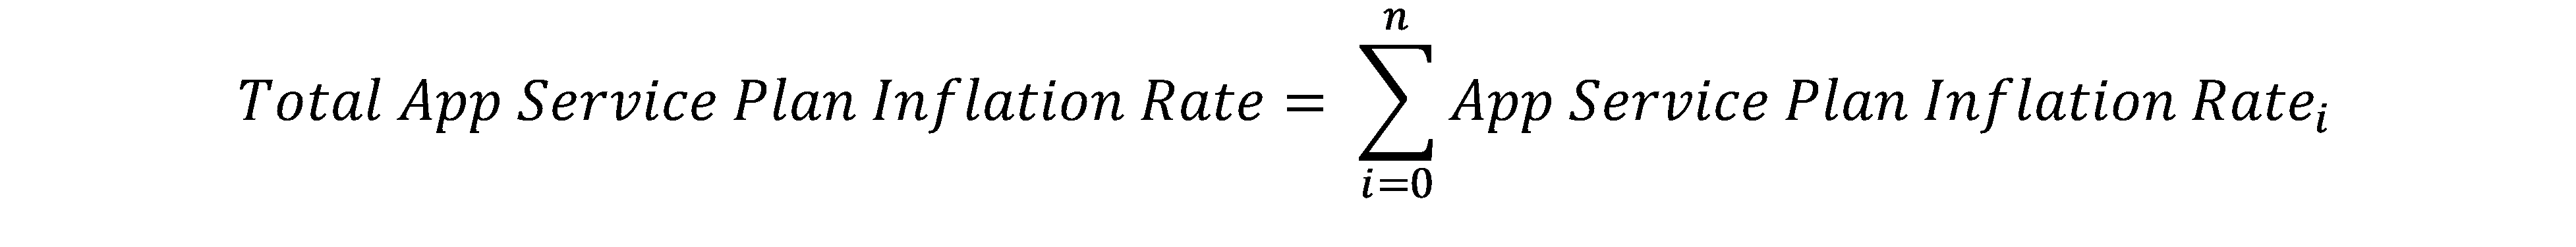 Cálculo de la tasa de inflación total para varios planes de App Service hospedados en un grupo de trabajo.